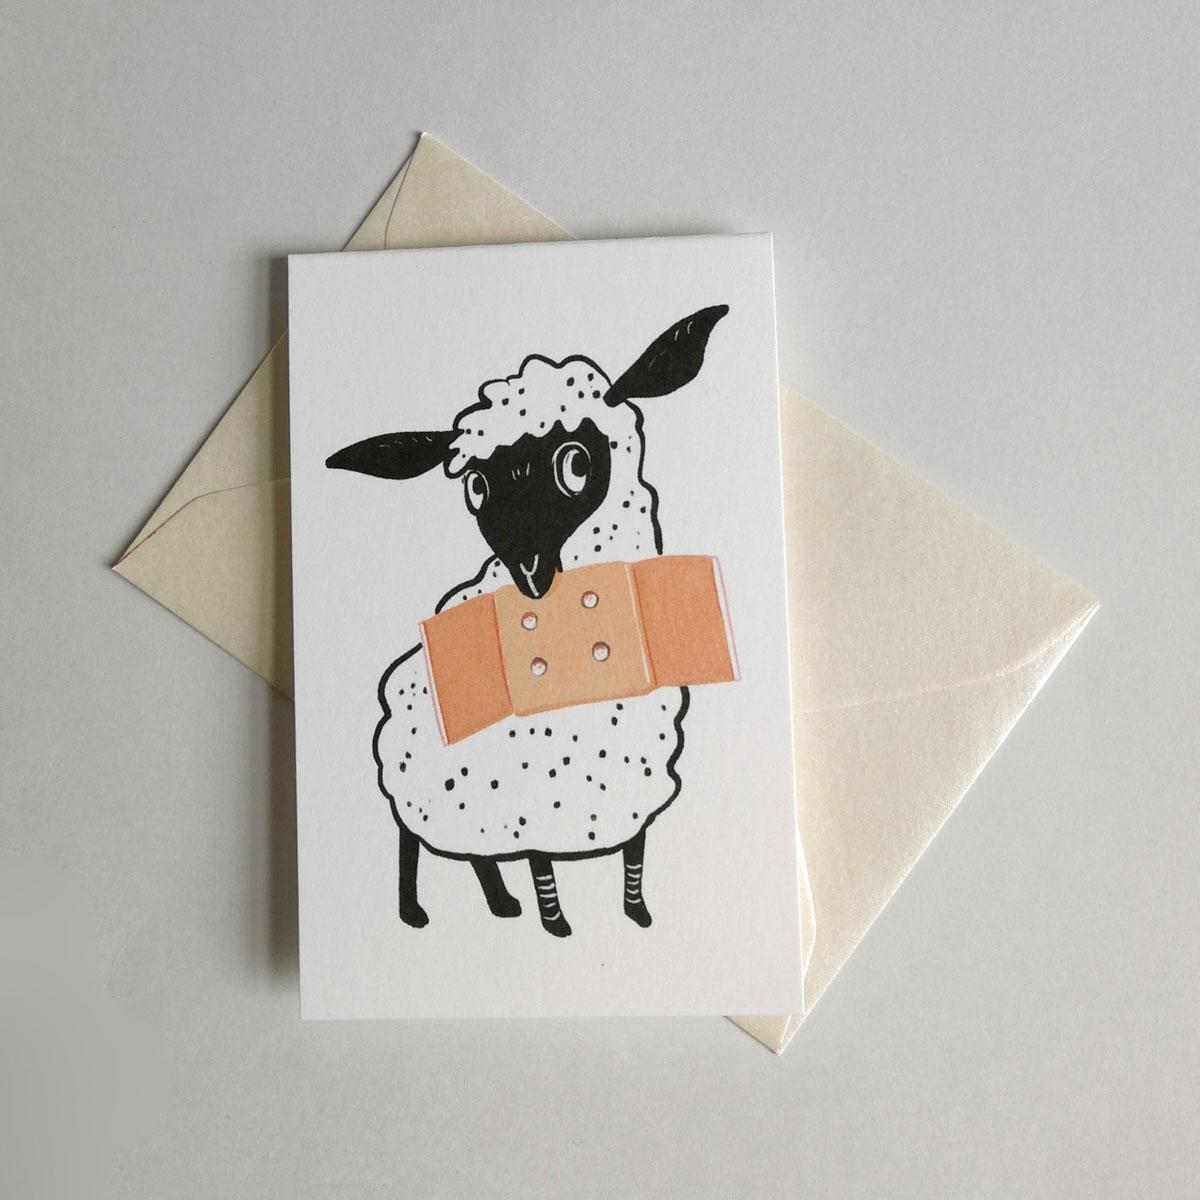 Miniklappkarte: Schaf mit Pflaster